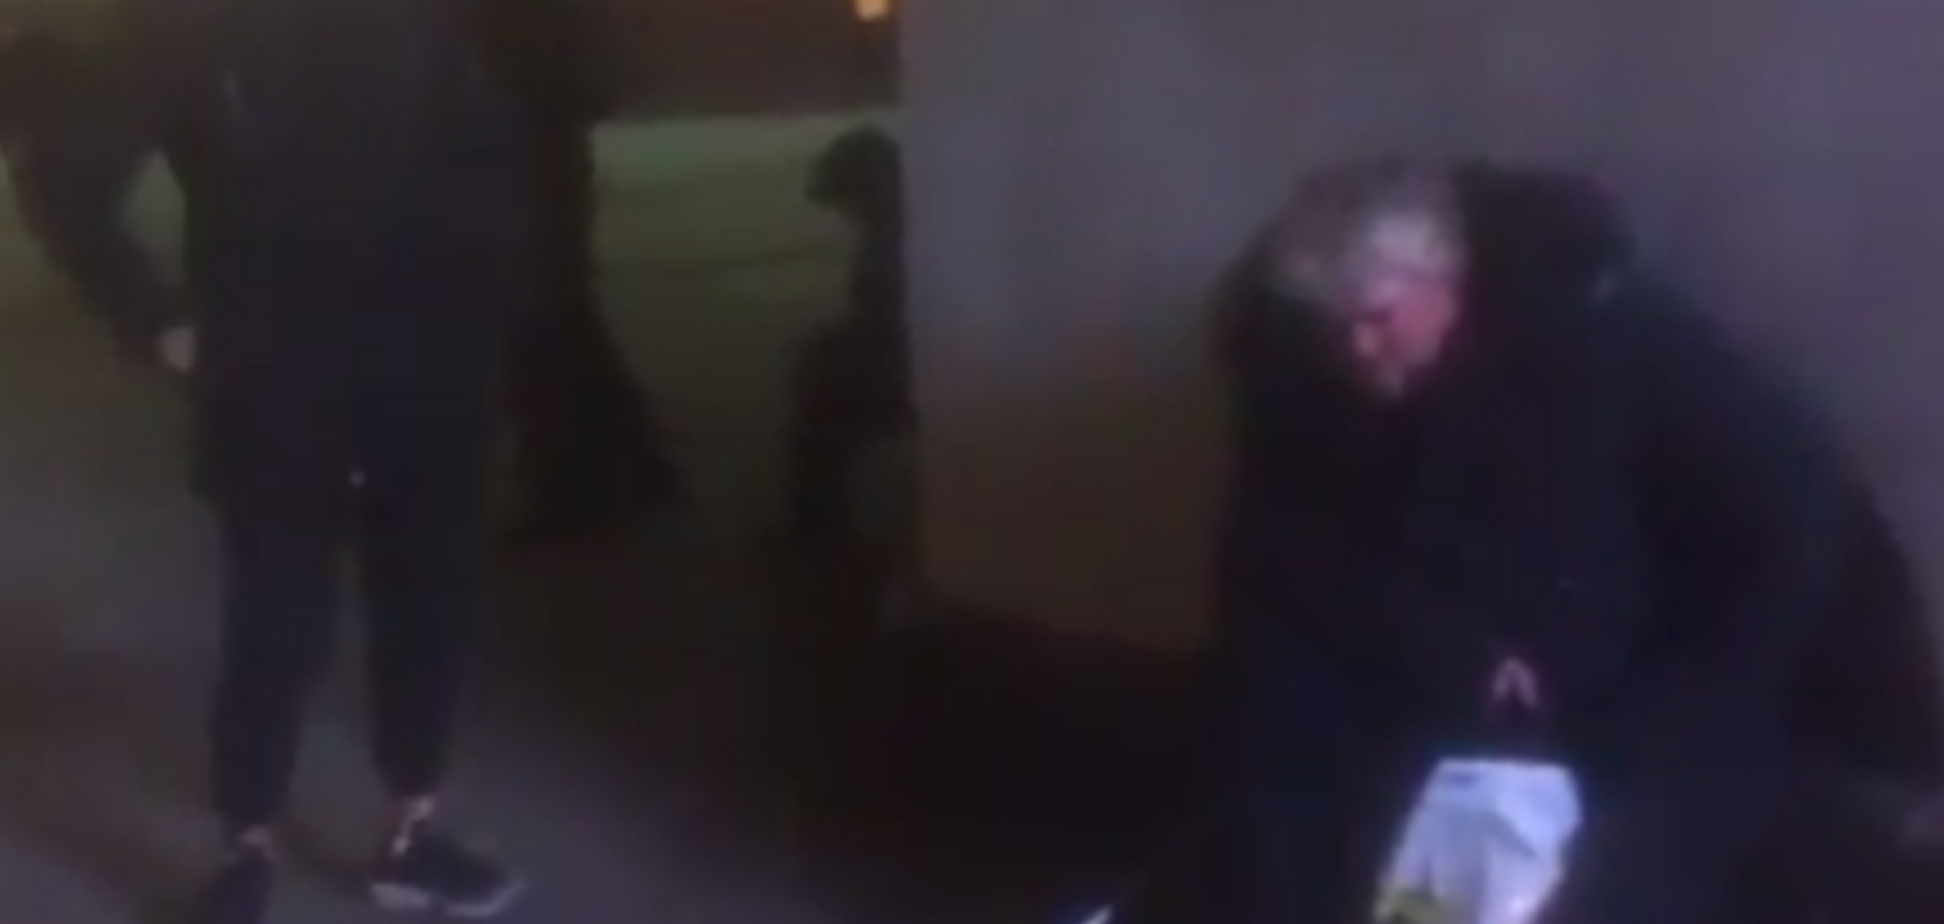 Видео, как студент жестоко бьет бездомного, возмутило соцсеть